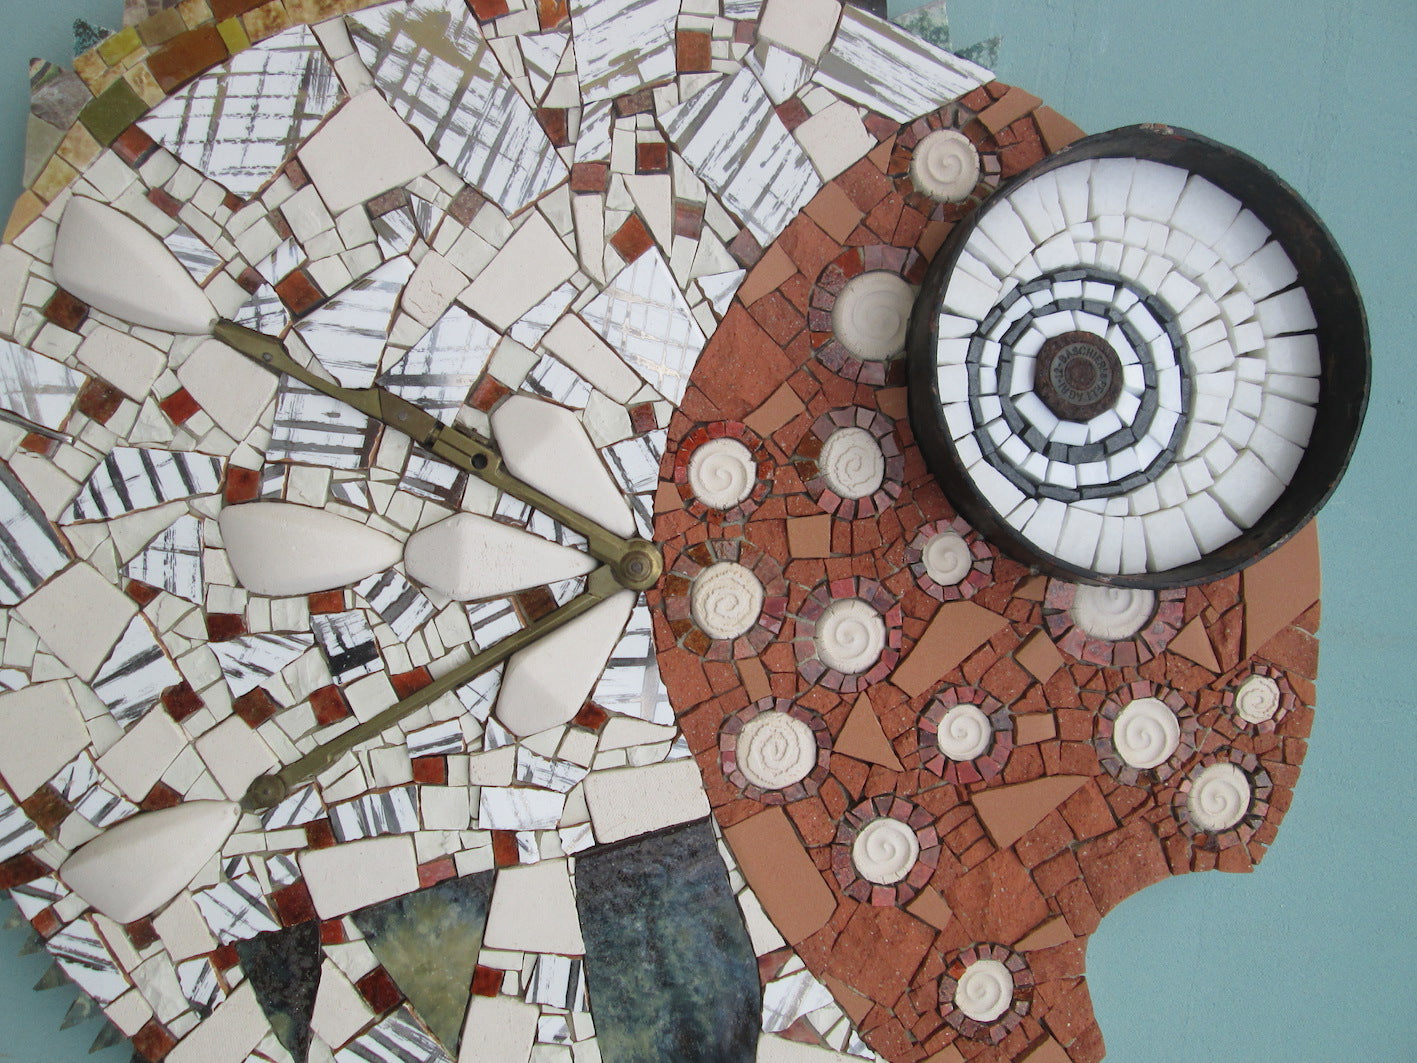 dettagli del pesce mosaico fatto a mano